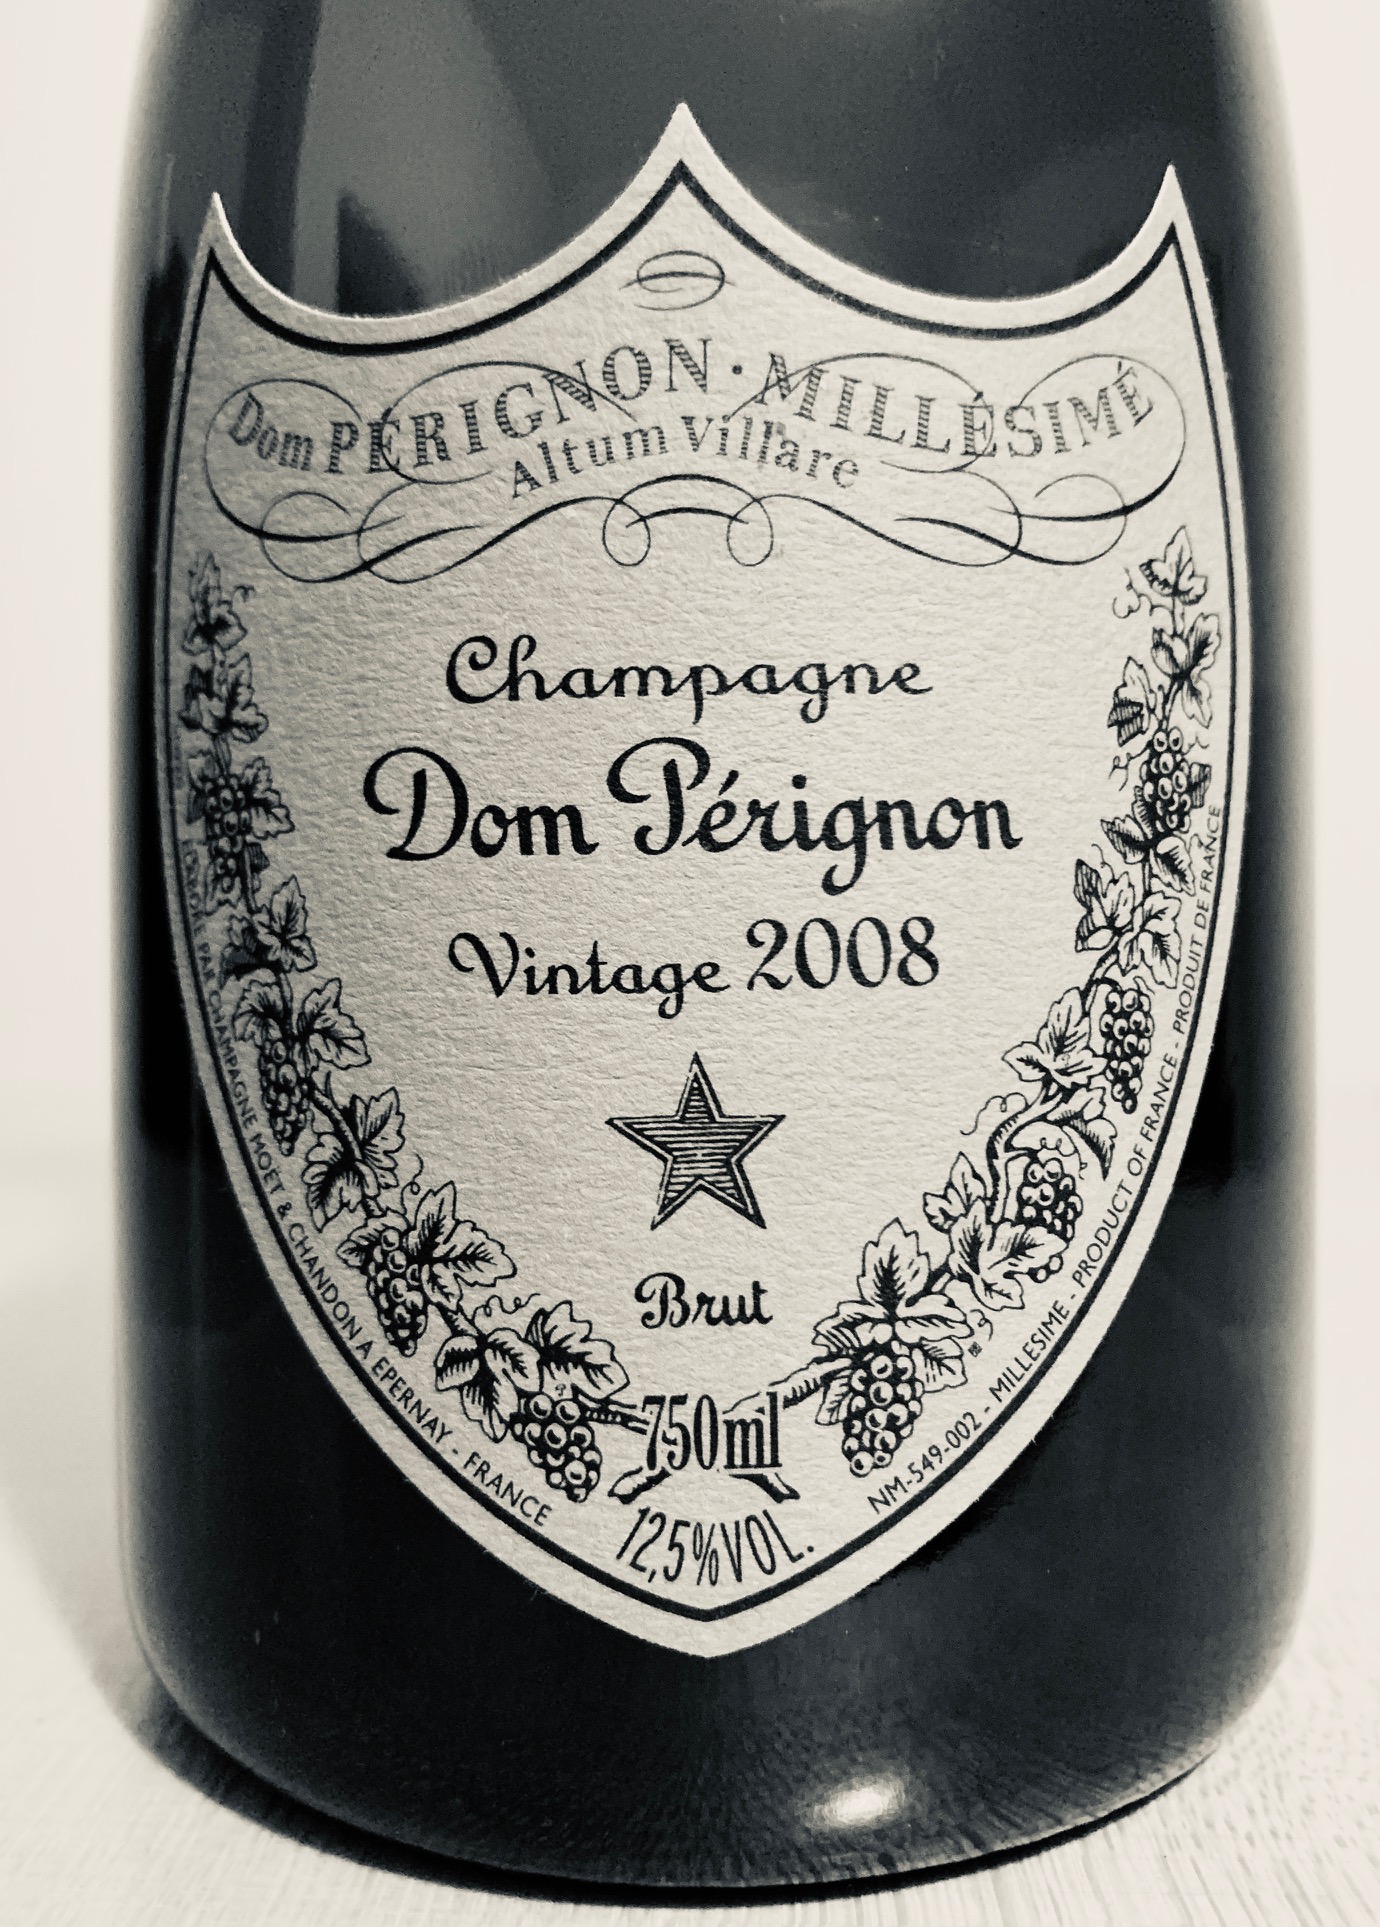 Dom Perignon Brut Champagne, France (Vintage Varies) - 750 ml bottle